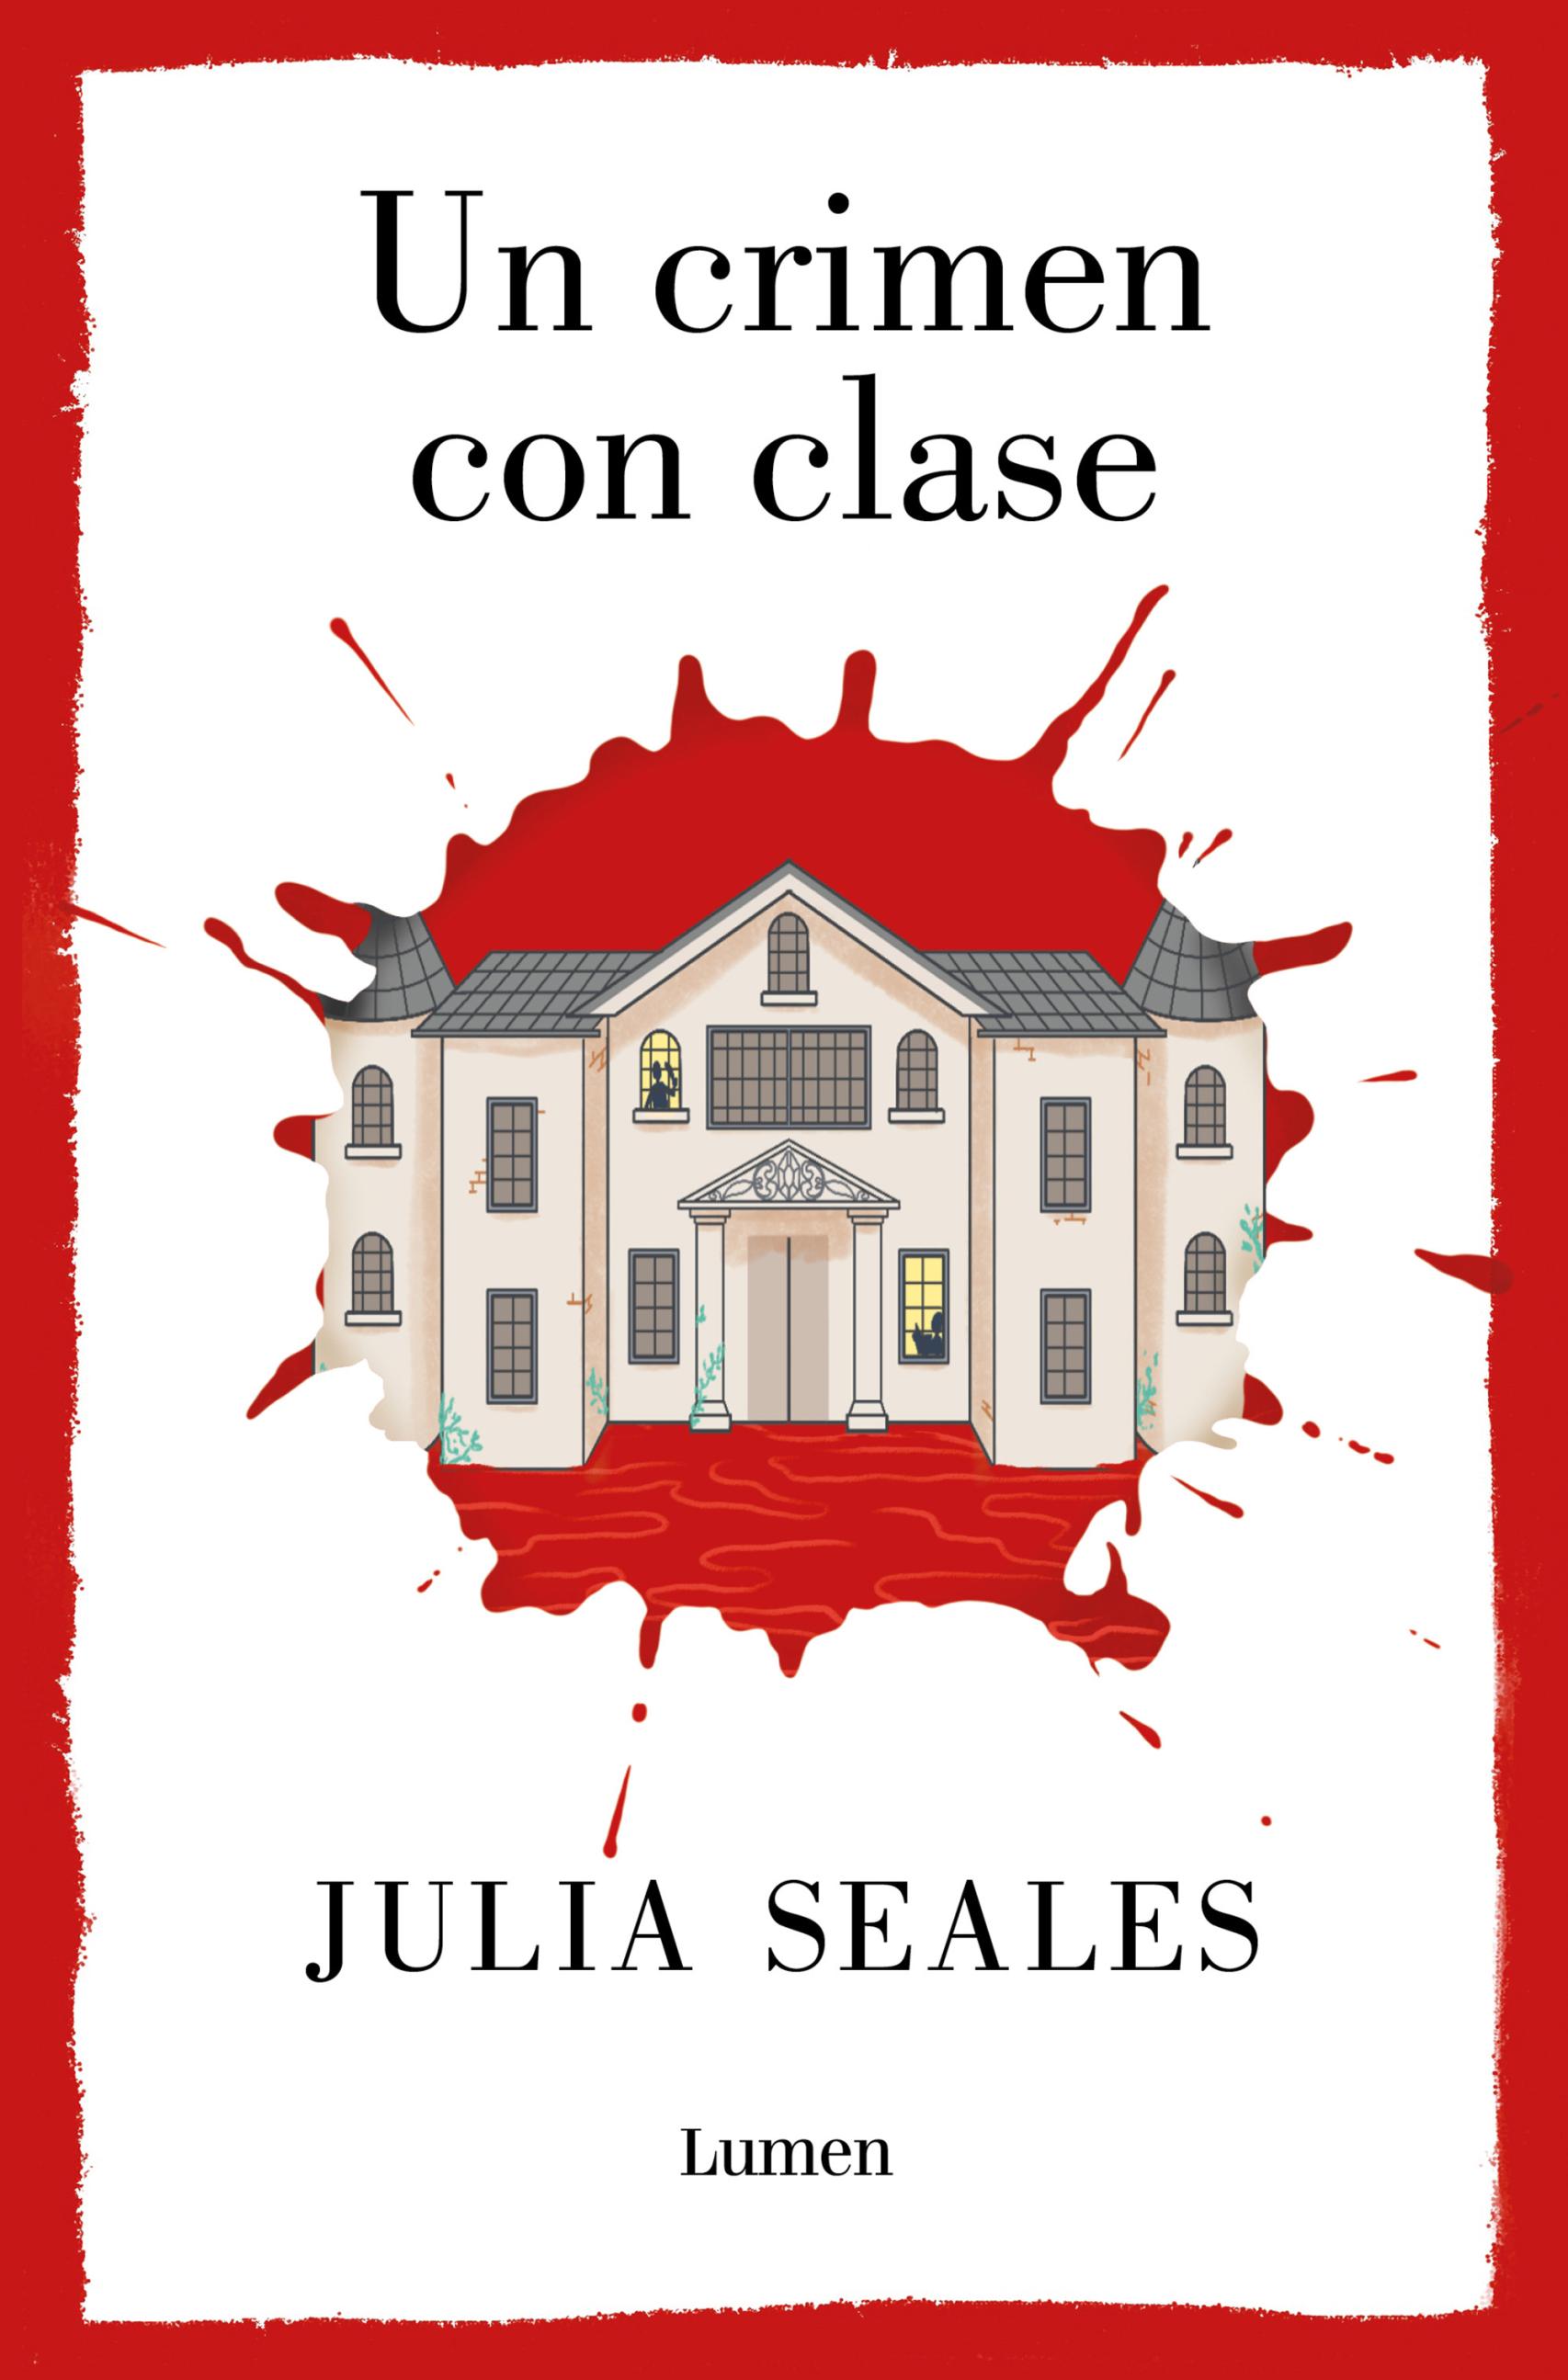 Portada del libro 'Un crimen con clase', de Julia Seales.